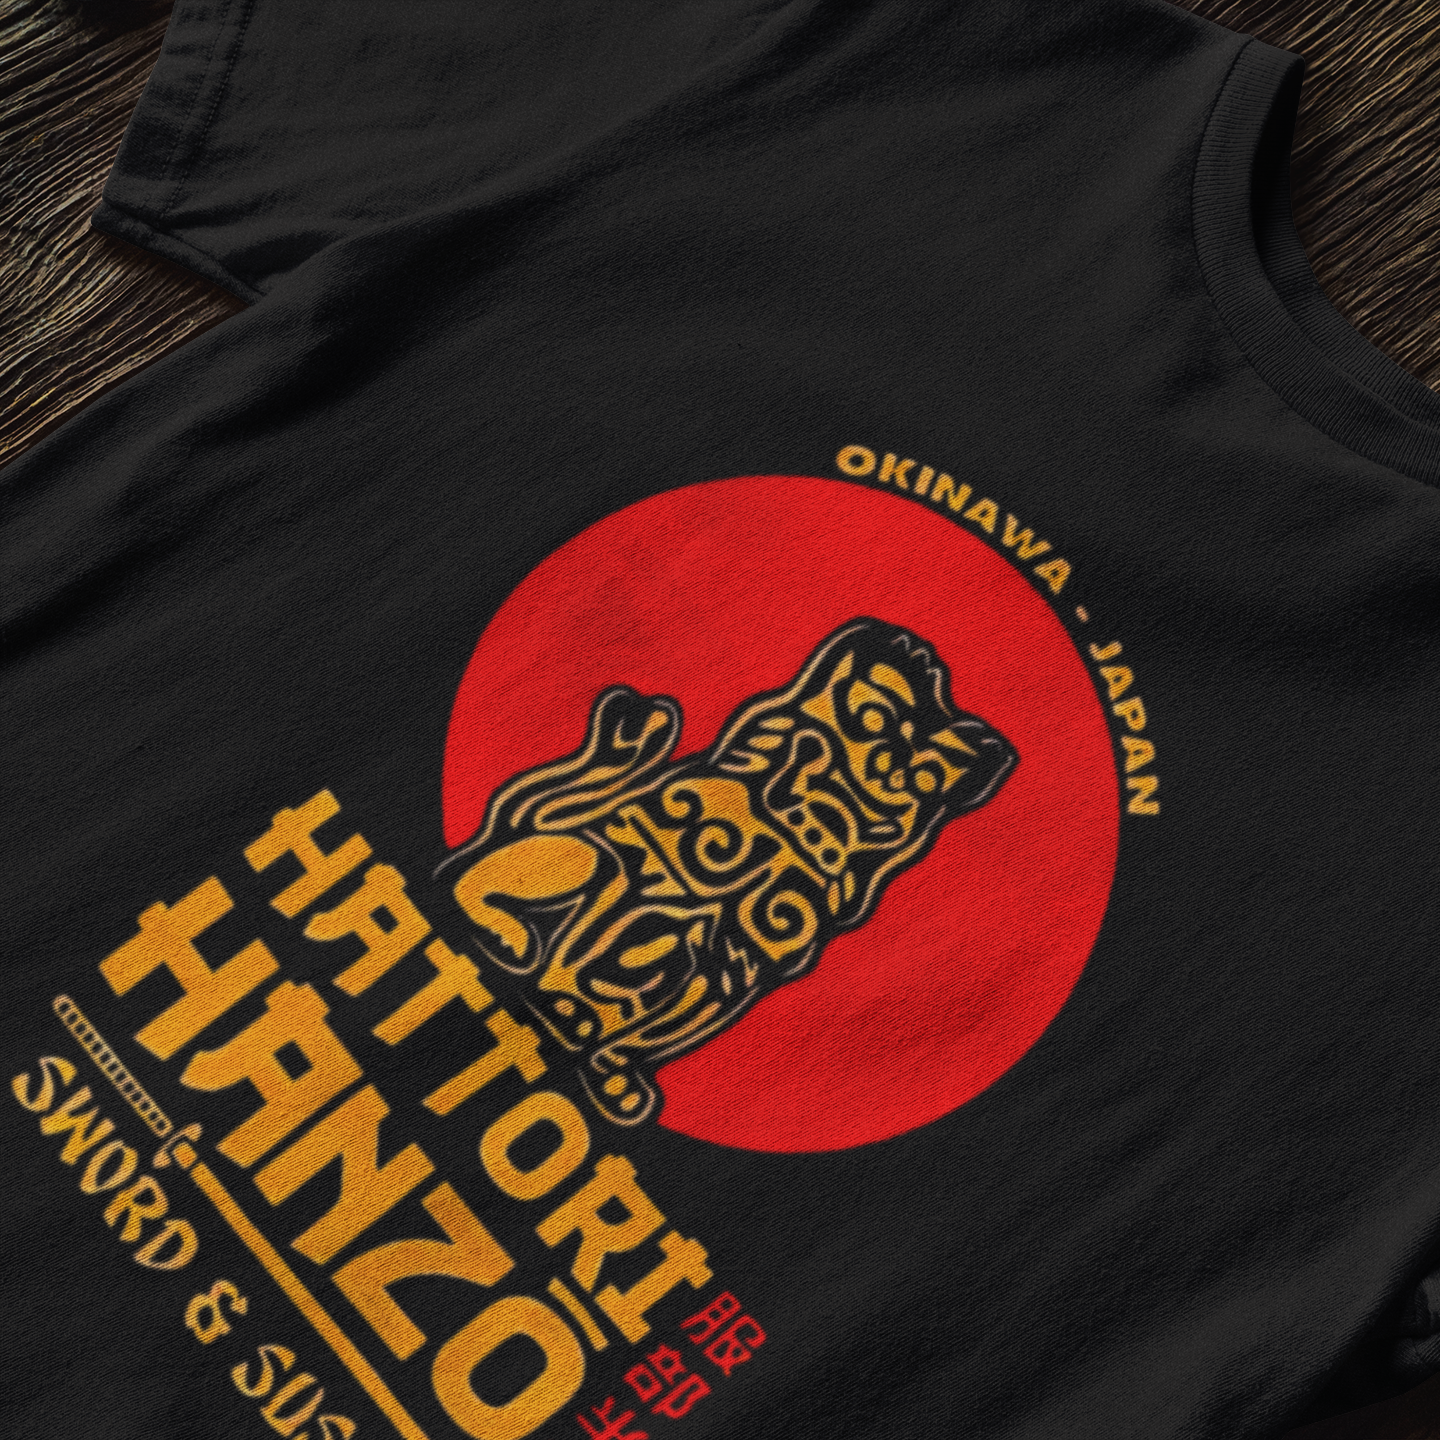 Hattori Hanzo - T-Shirt